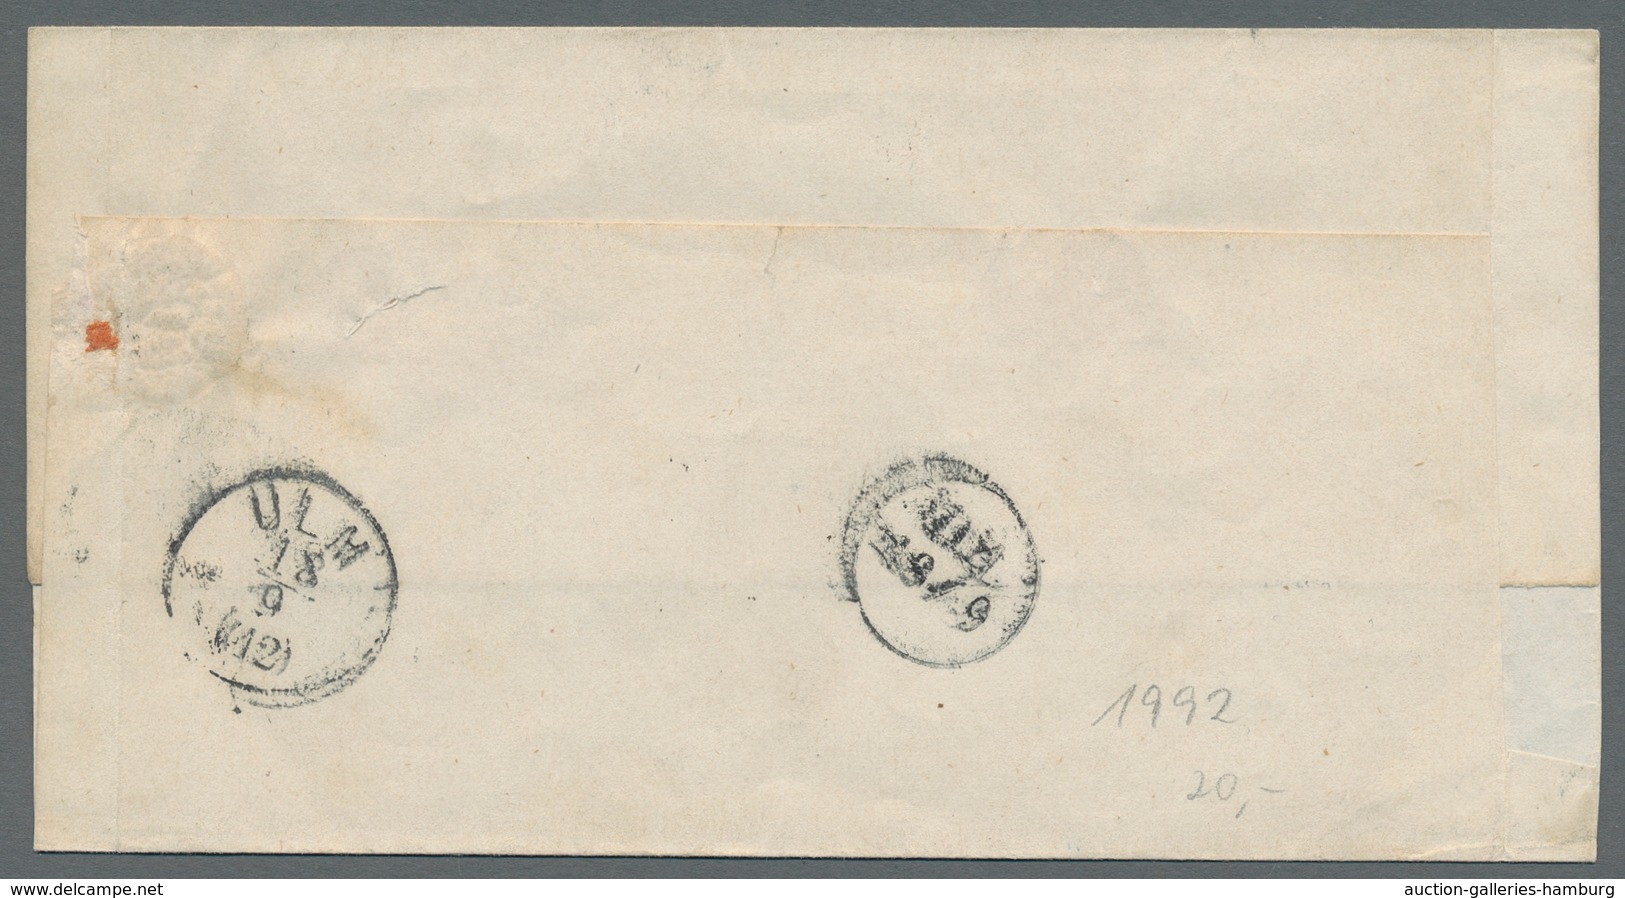 Altdeutschland - Vorphila: 1755-1867, Sammlung von 41 Vorphilabriefen und markenlosen Briefen in ein